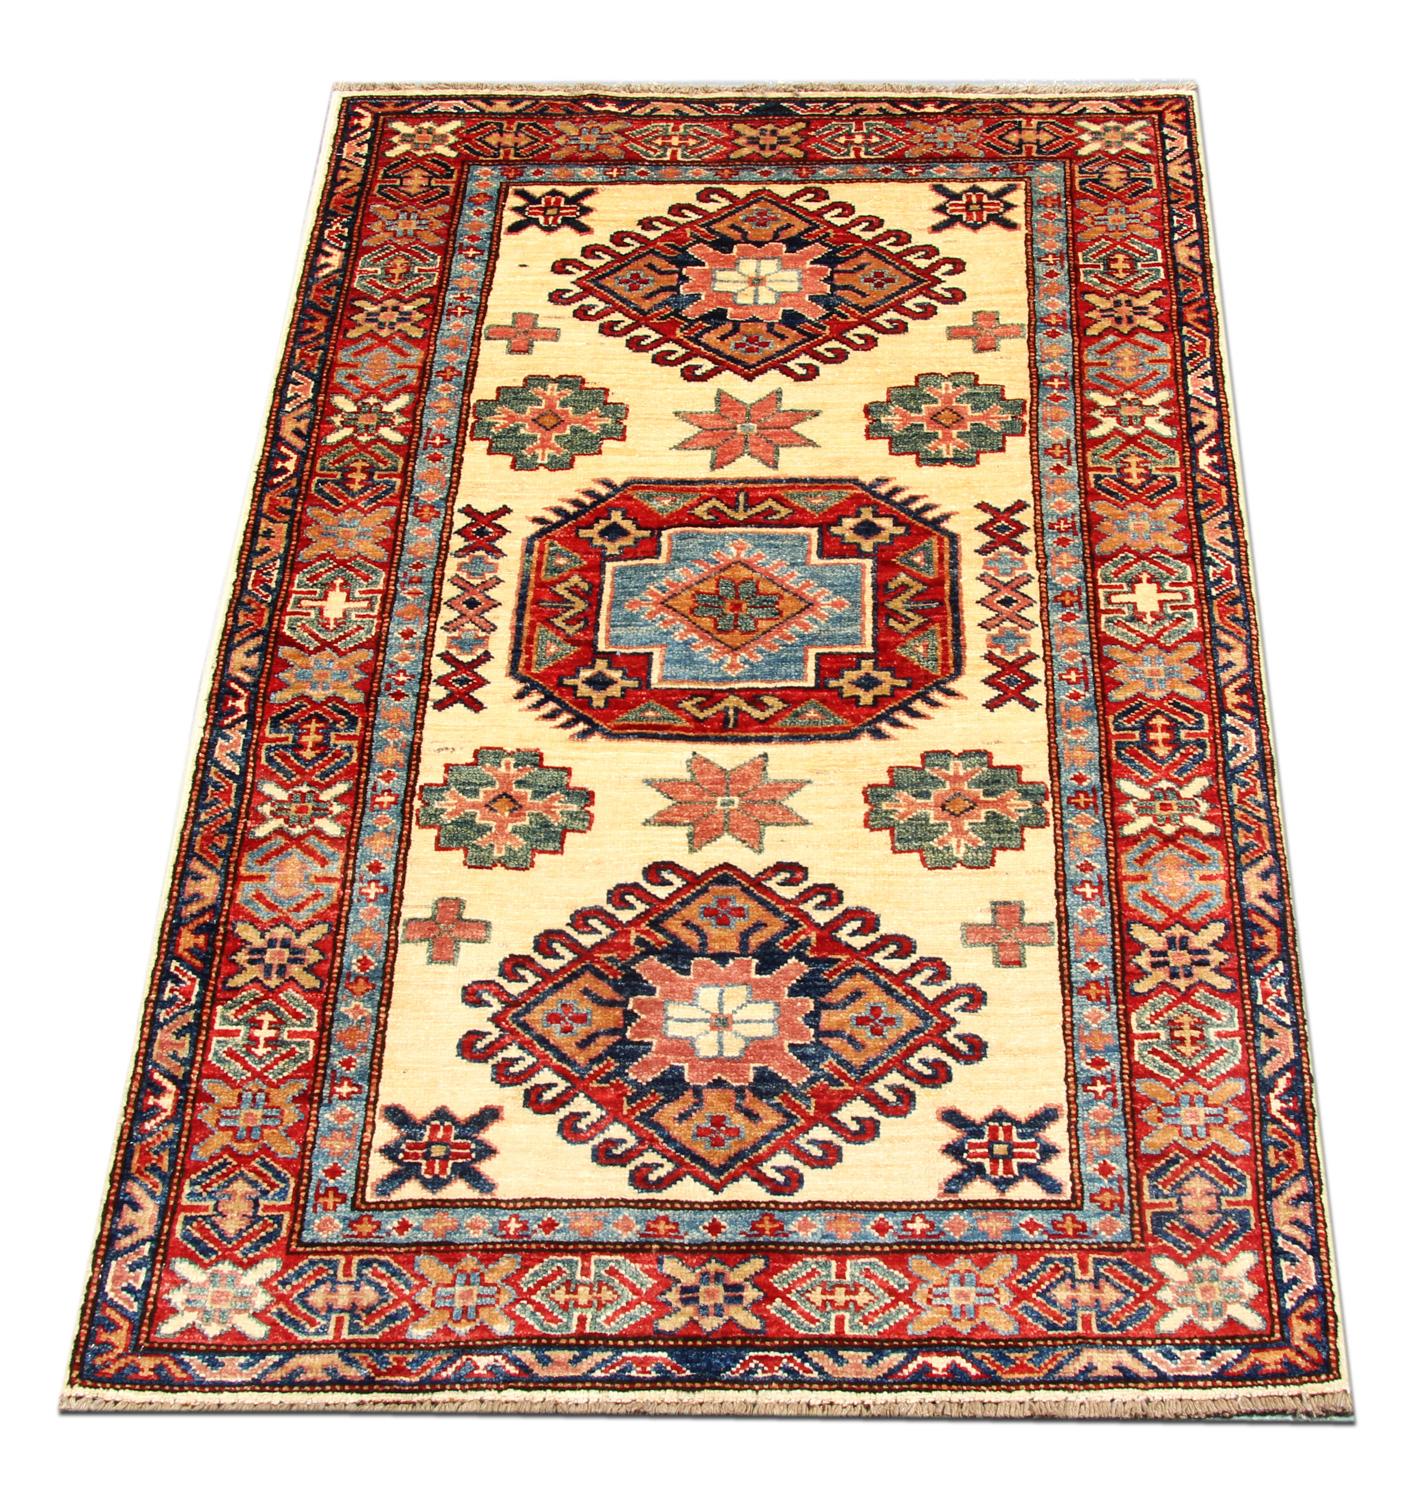 Diese neuen traditionellen handgefertigten Teppiche zeigen Designs aus der kaukasischen Region Kazak. Ein konventioneller Stammesteppich ist im Kazak-Gebiet berühmt. Afghanische Weber haben diesen handgewebten Teppich aus hochwertiger